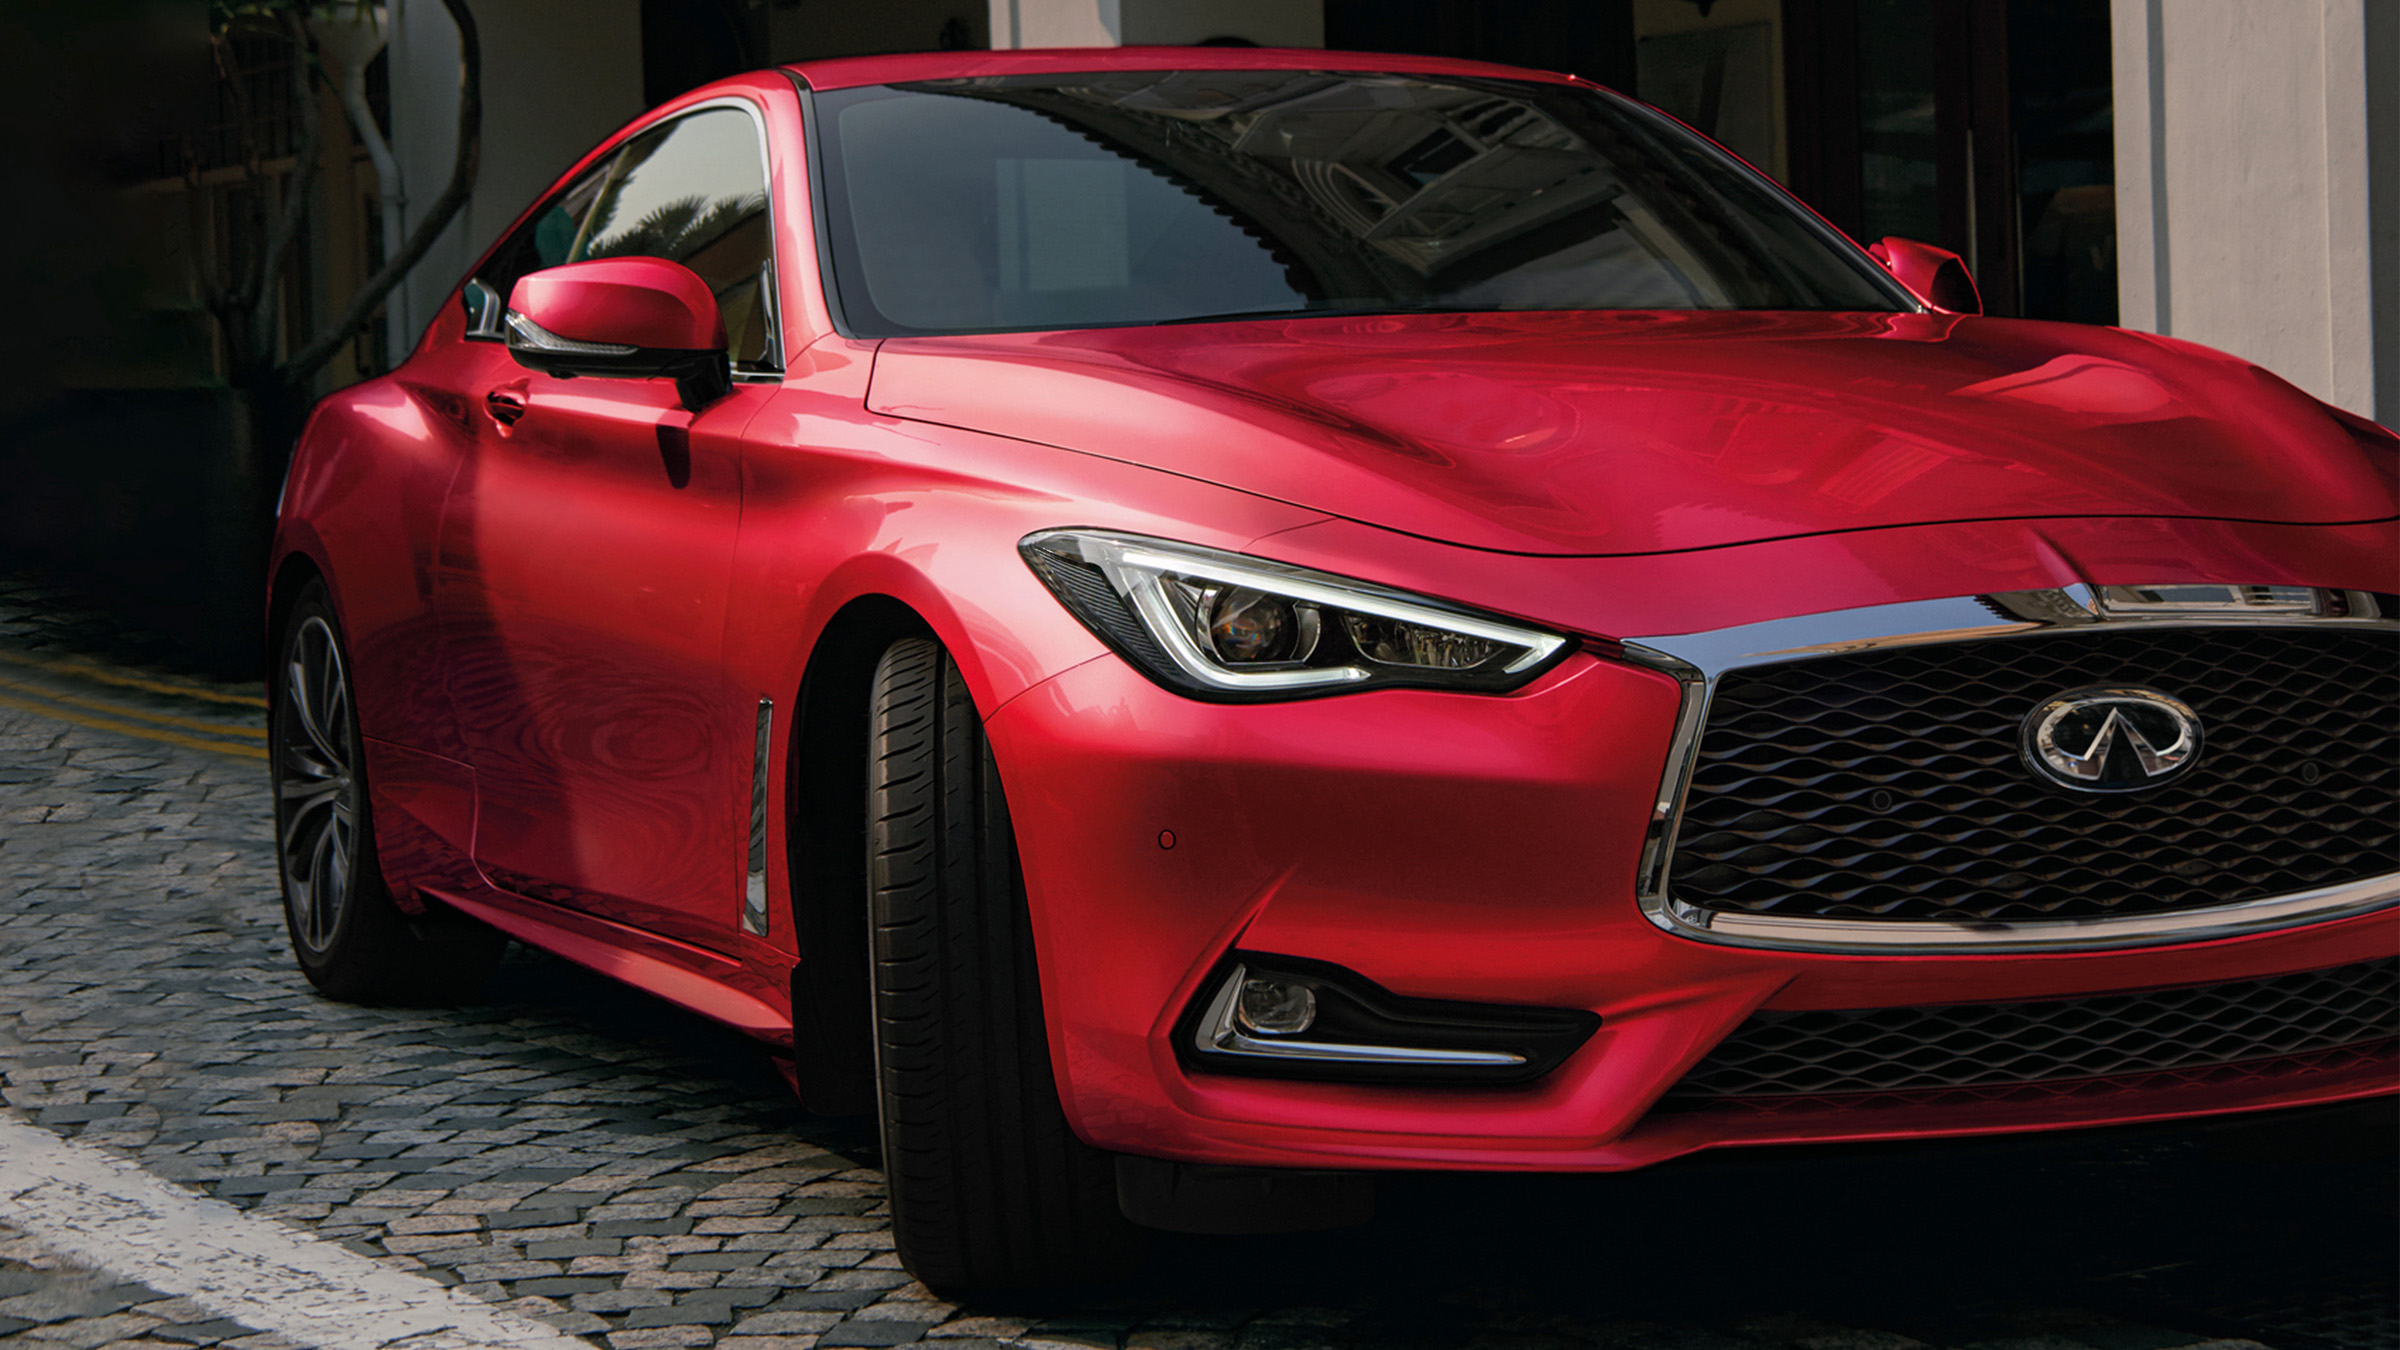 2022 INFINITI Q60 car red exterior.